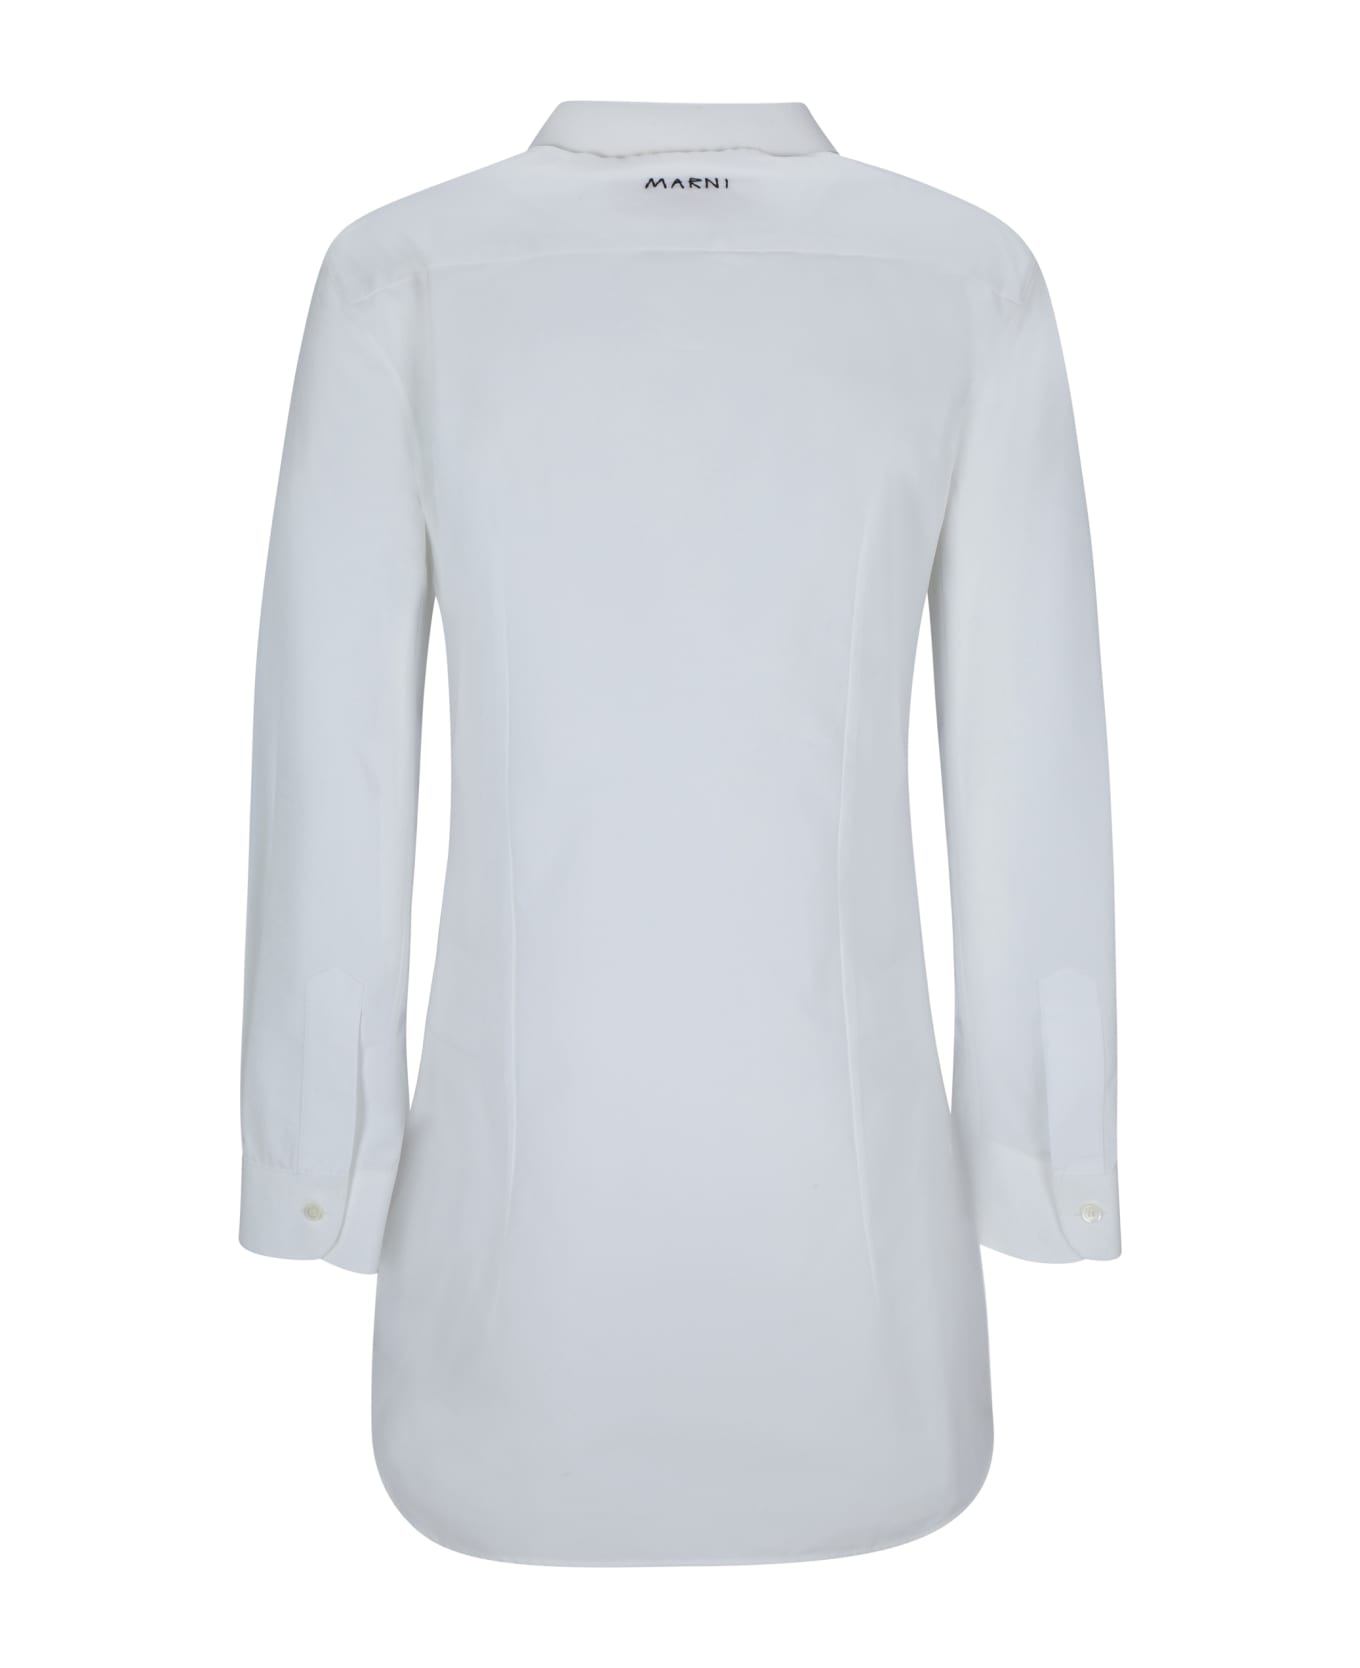 Marni Shirt - WHITE シャツ